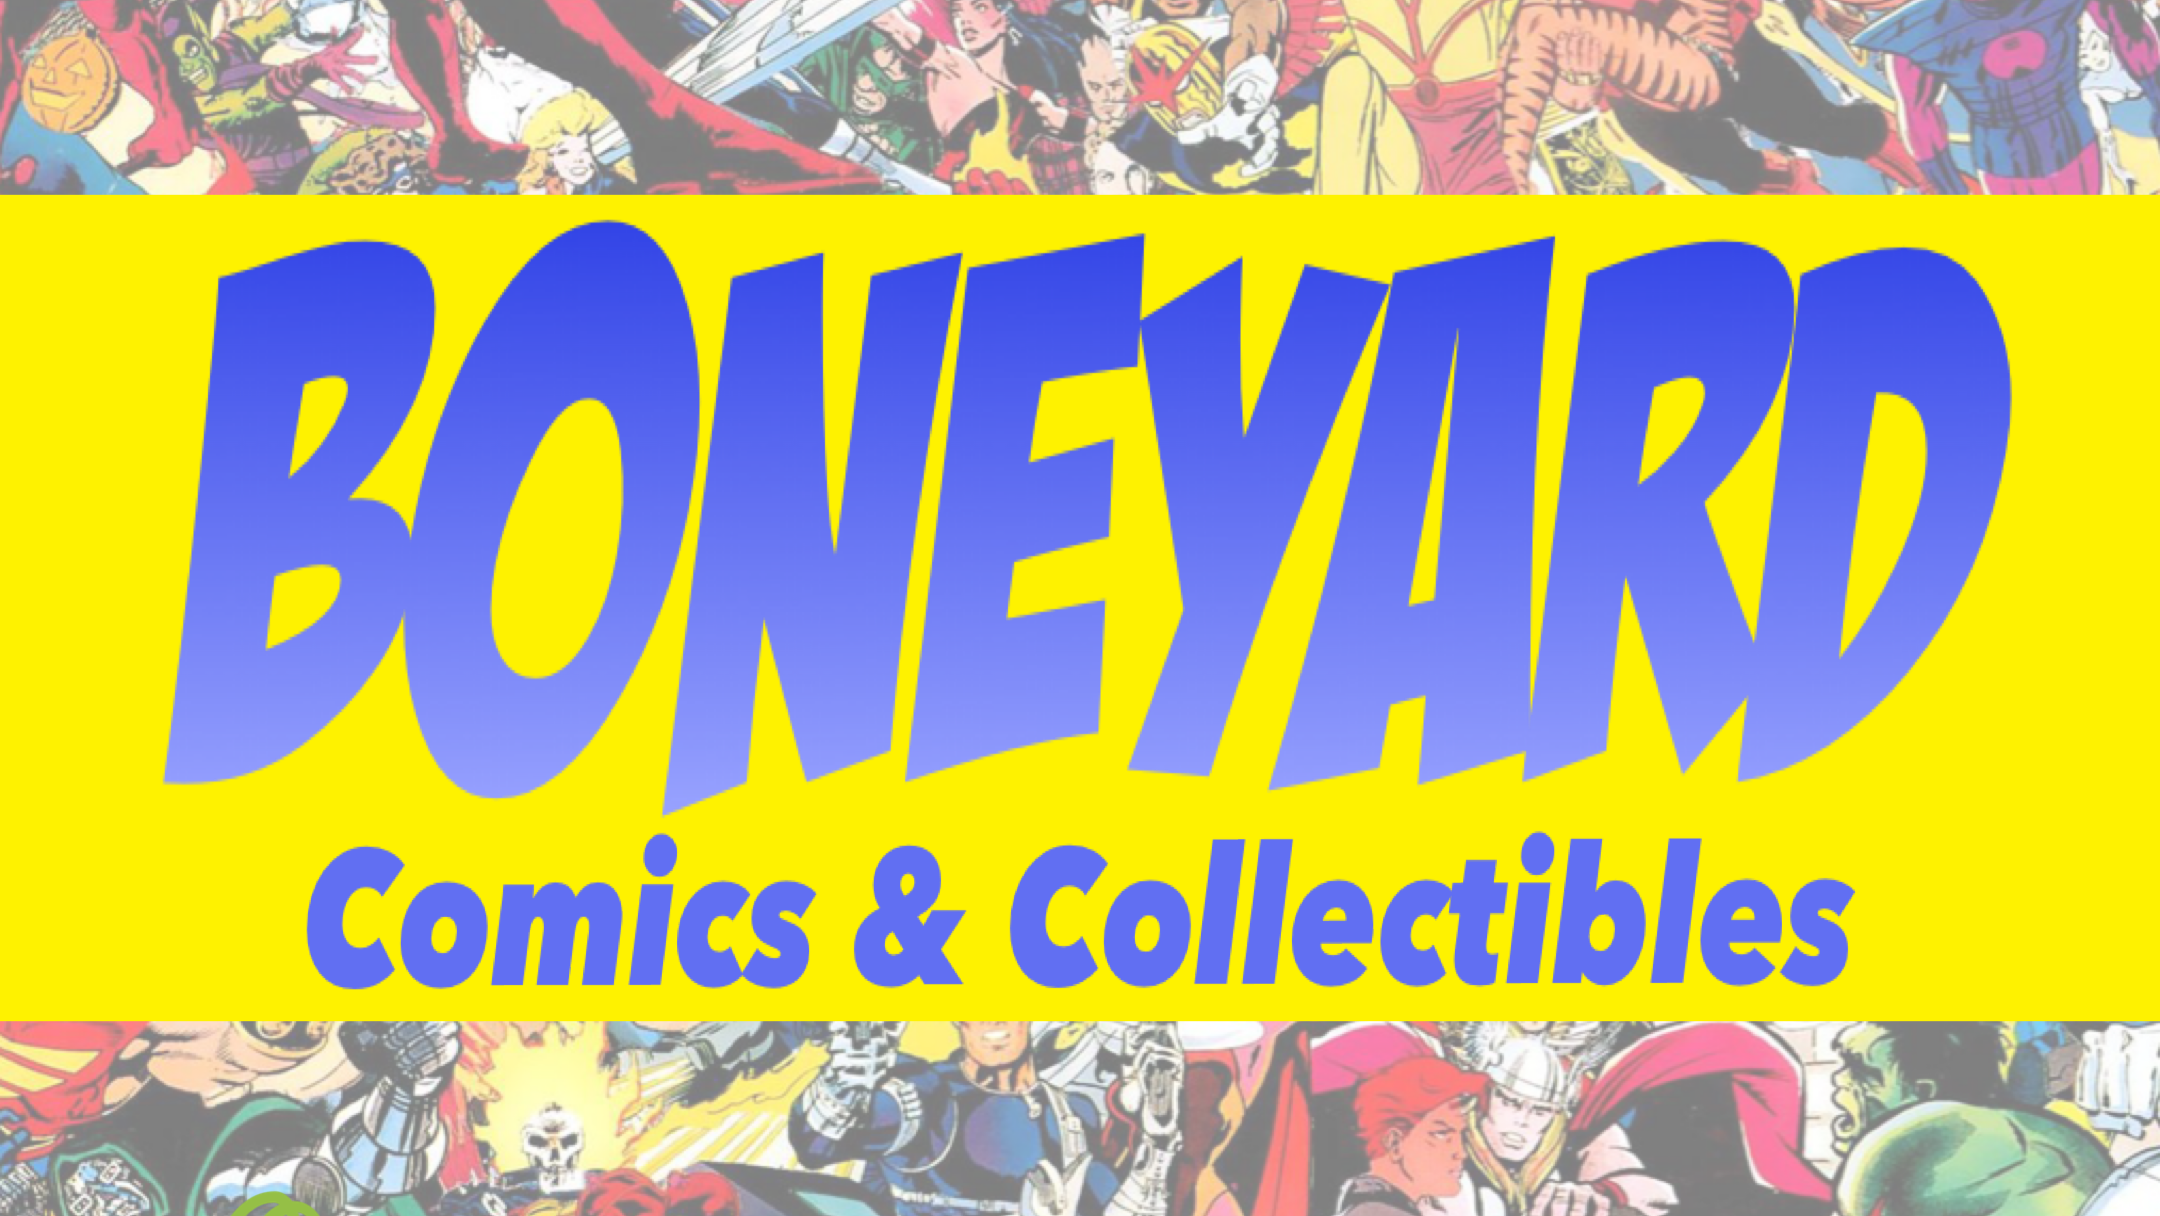 Boneyard Comics & Collectibles